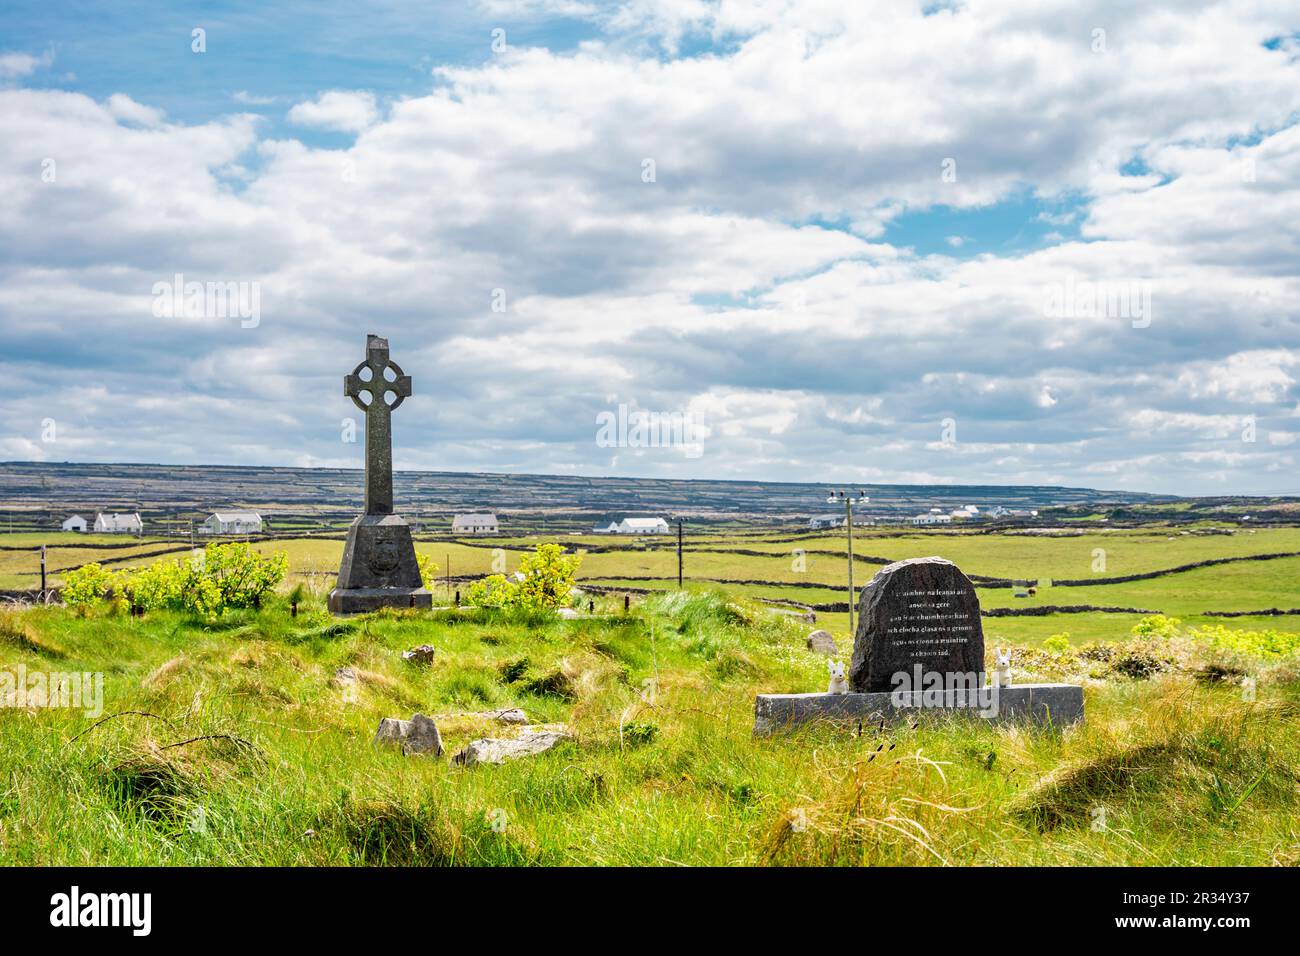 Cimetière avec croix celtique à Inis Mór, ou Inishmore, la plus grande des îles d'Aran dans la baie de Galway, au large de la côte ouest de l'Irlande. Banque D'Images